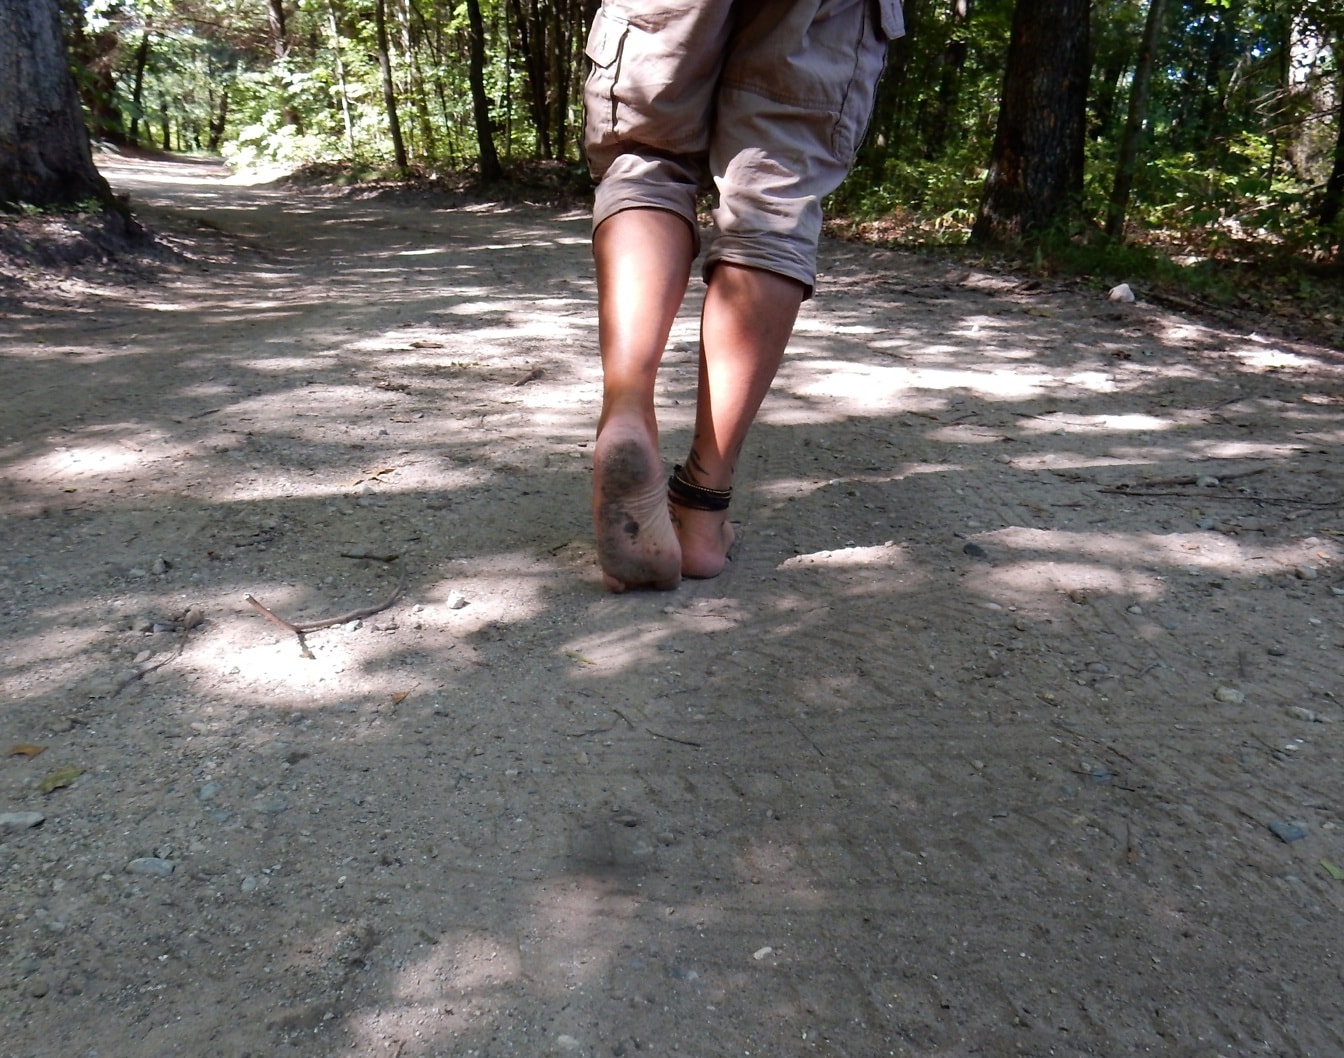 Mezítláb sétáló férfi piszkos erdei úton